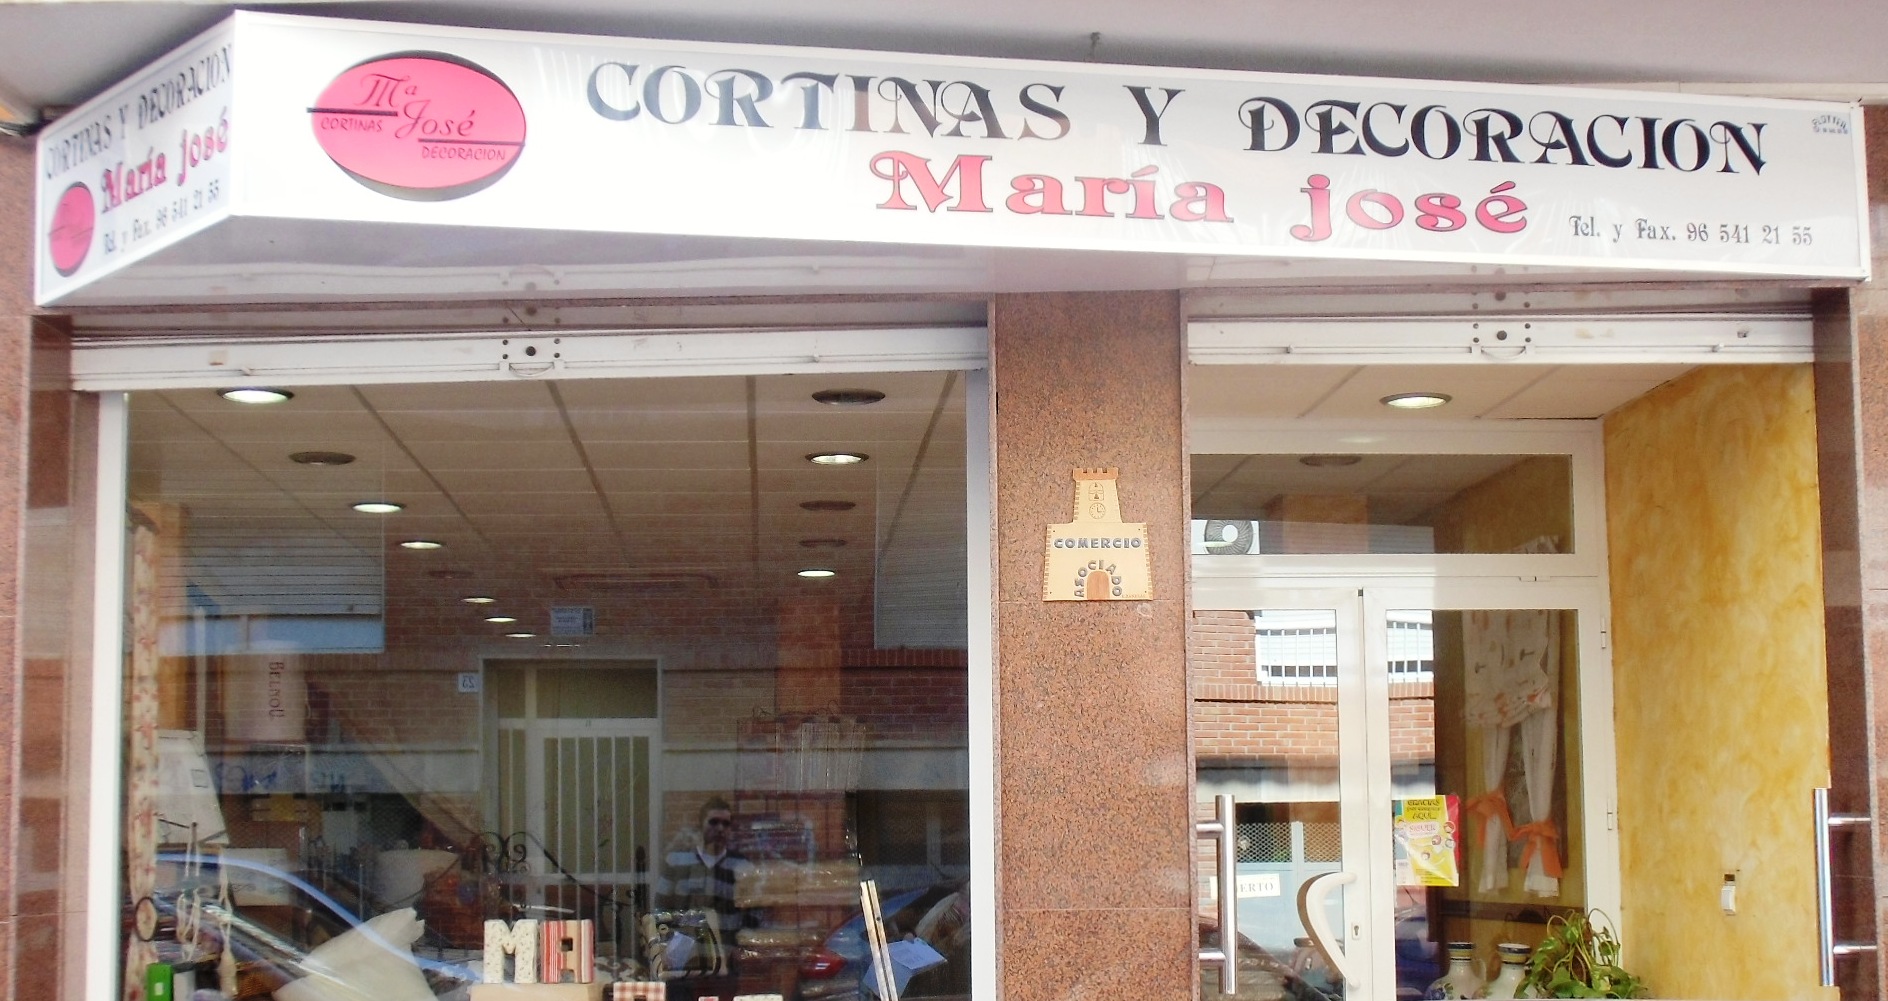 CORTINAS MARIA JOSE